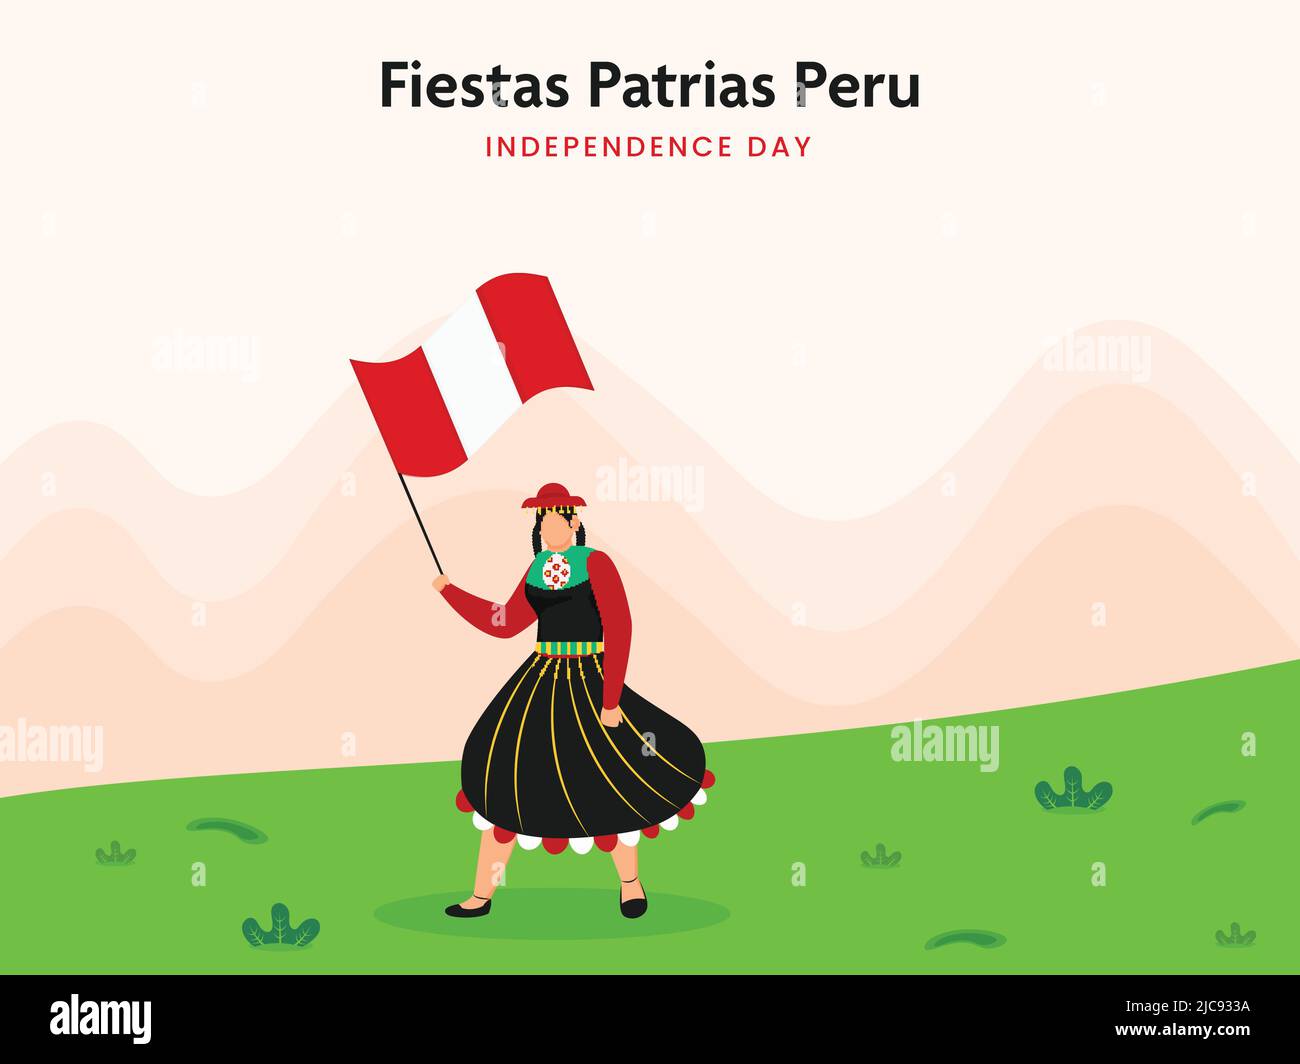 Fiestas Patrias Peru Independence Day concept, femme péruvienne portant une robe traditionnelle avec drapeau national Holded sur Peach et fond vert. Illustration de Vecteur